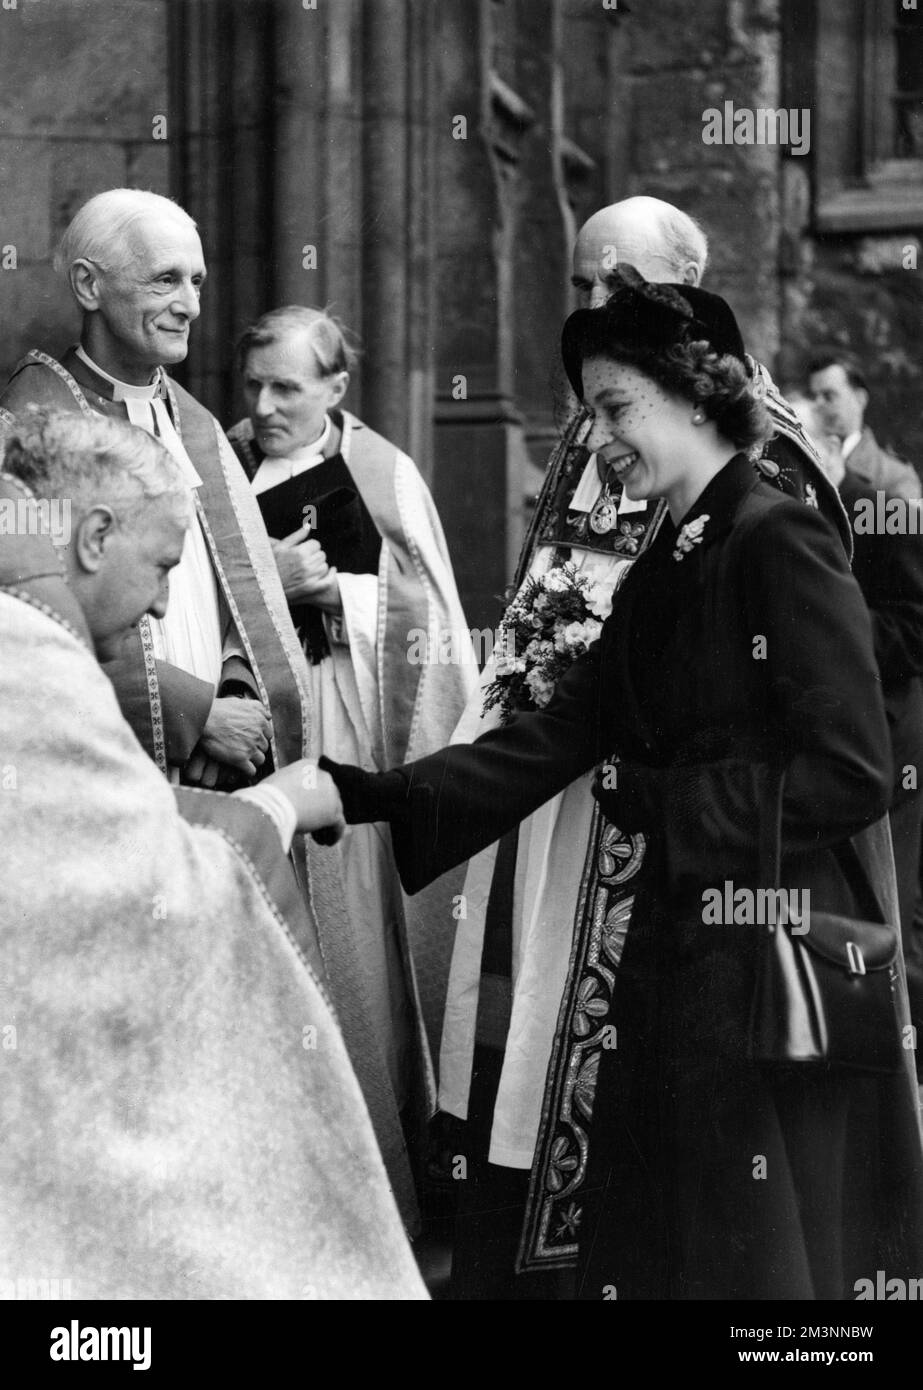 La reine Elizabeth II étant accueillie à son arrivée à l'abbaye de Westminster, lorsqu'elle a distribué l'argent du Royal Maundy. Dans l'année de cette photo, 1952 26 hommes et femmes âgés, une fois pour chaque année de l'âge du souverain, recevront la clôture d'argent, spécialement frappée à la monnaie royale dans des bourses en cuir. Les pièces portent encore l'impression de la tête du roi George VI Date : 10th avril 1952. Banque D'Images